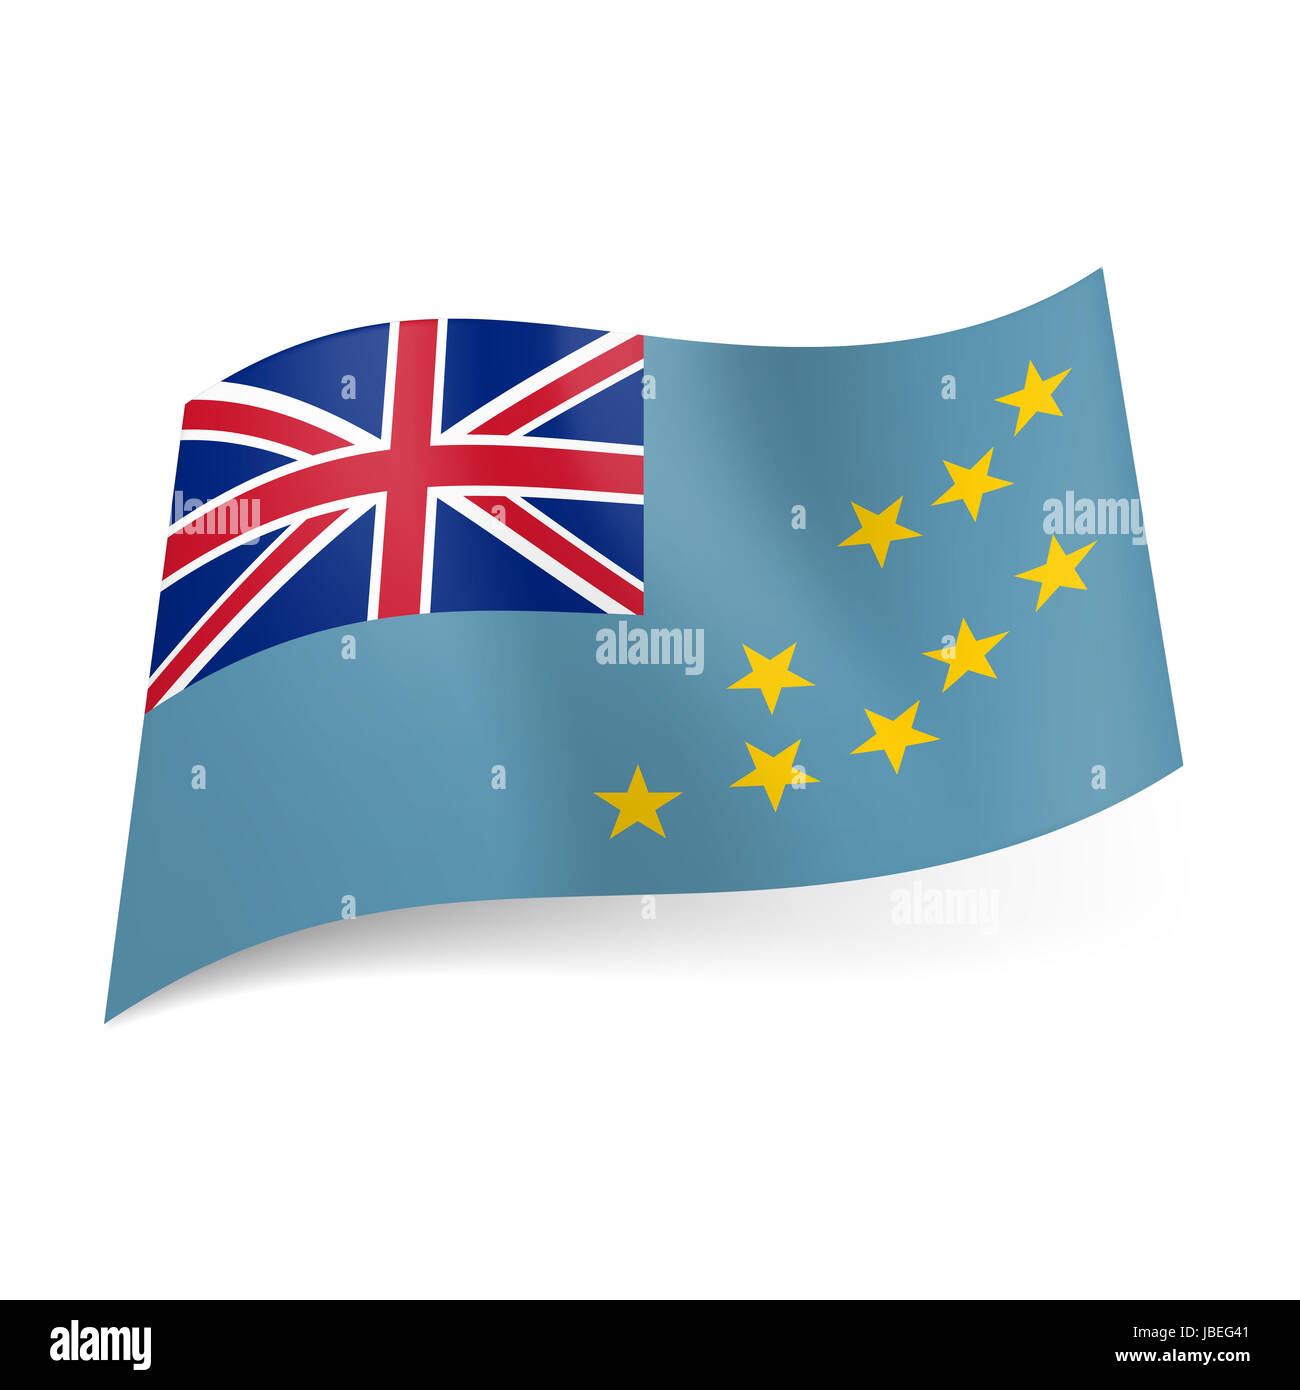 Nationalflagge Von Tuvalu Britische Flagge Und Gelbe Sterne Auf Blauem Hintergrund Stockfotografie Alamy